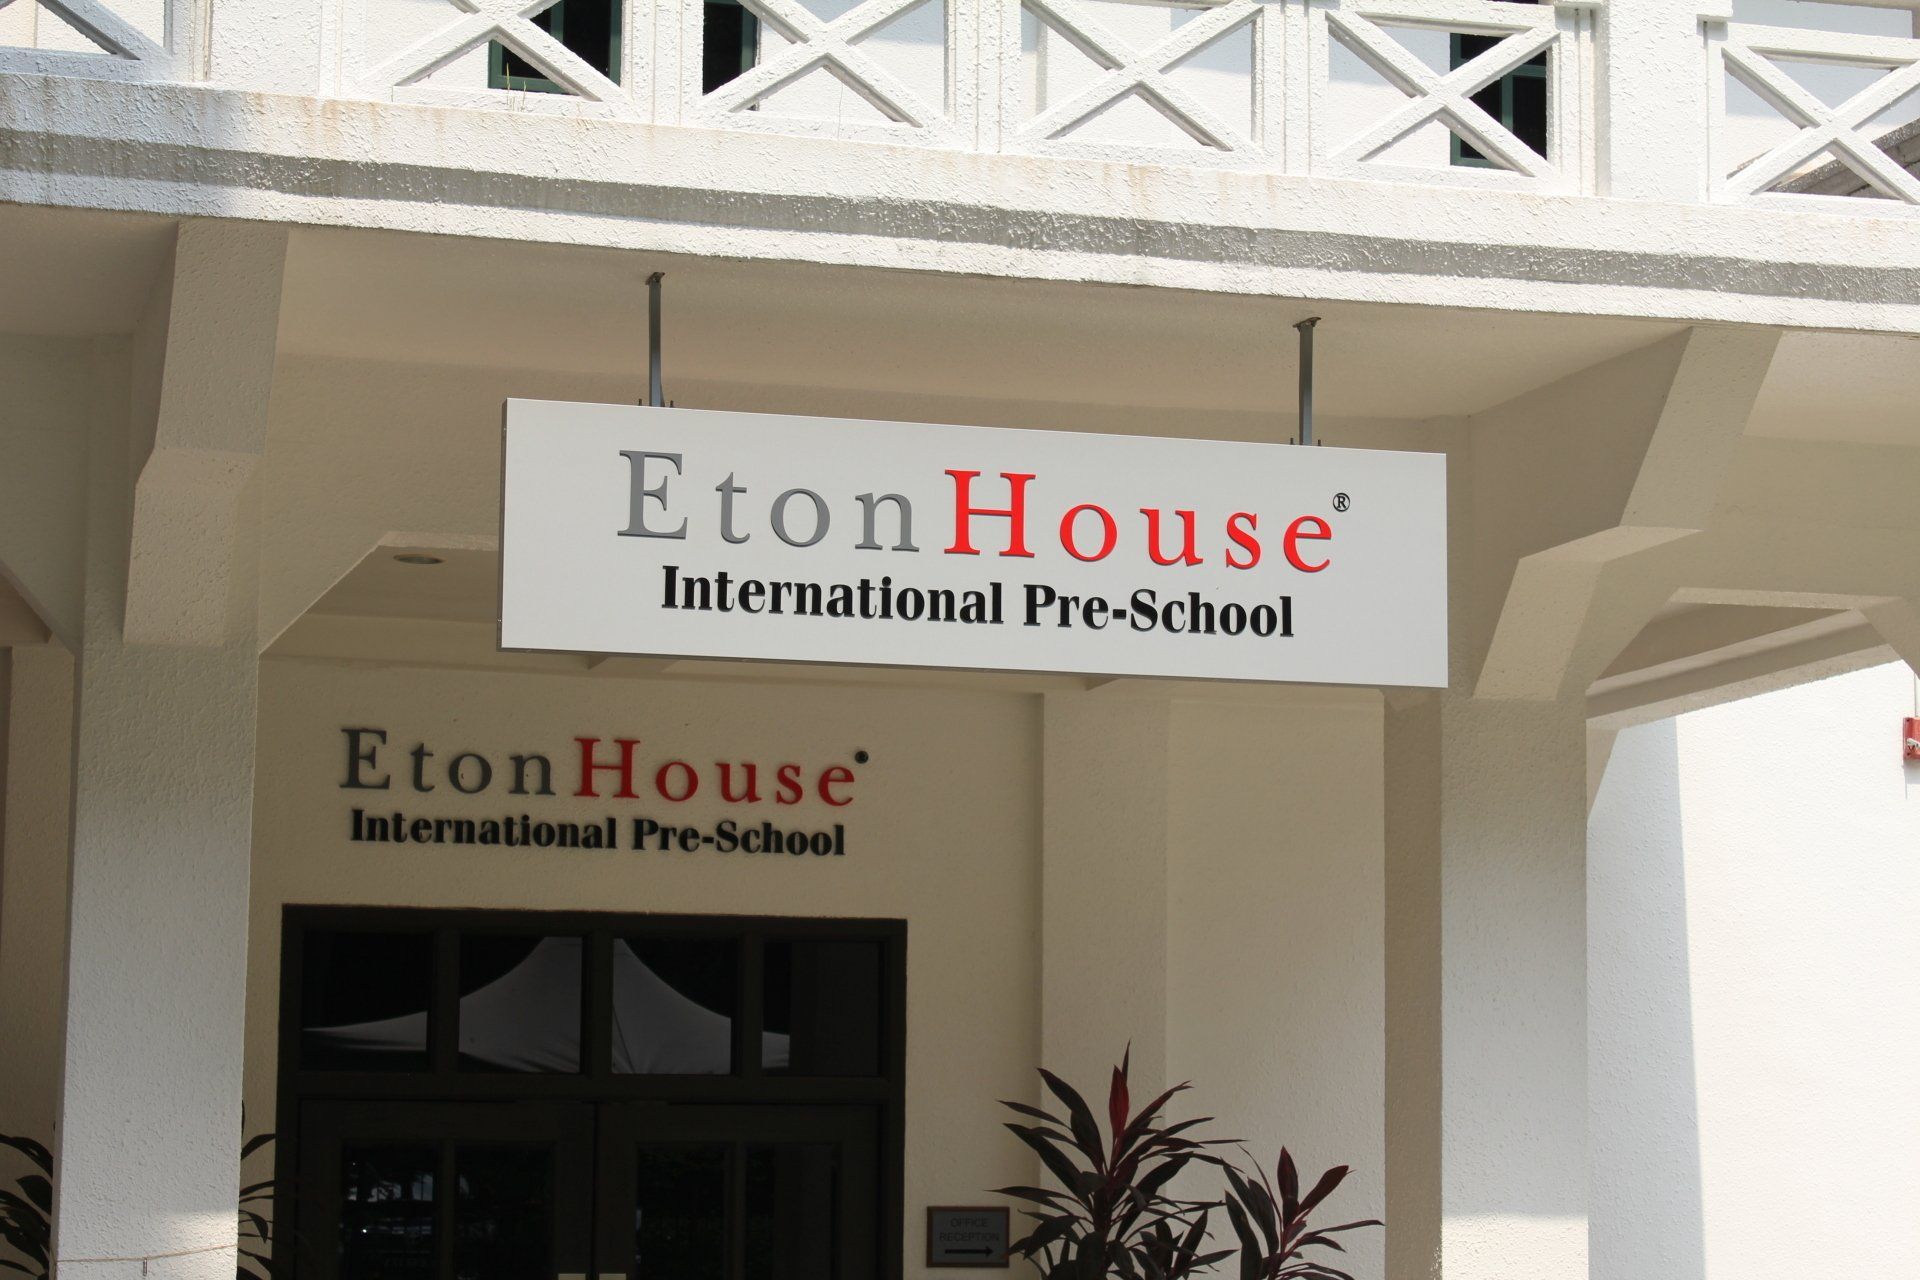 Eton House